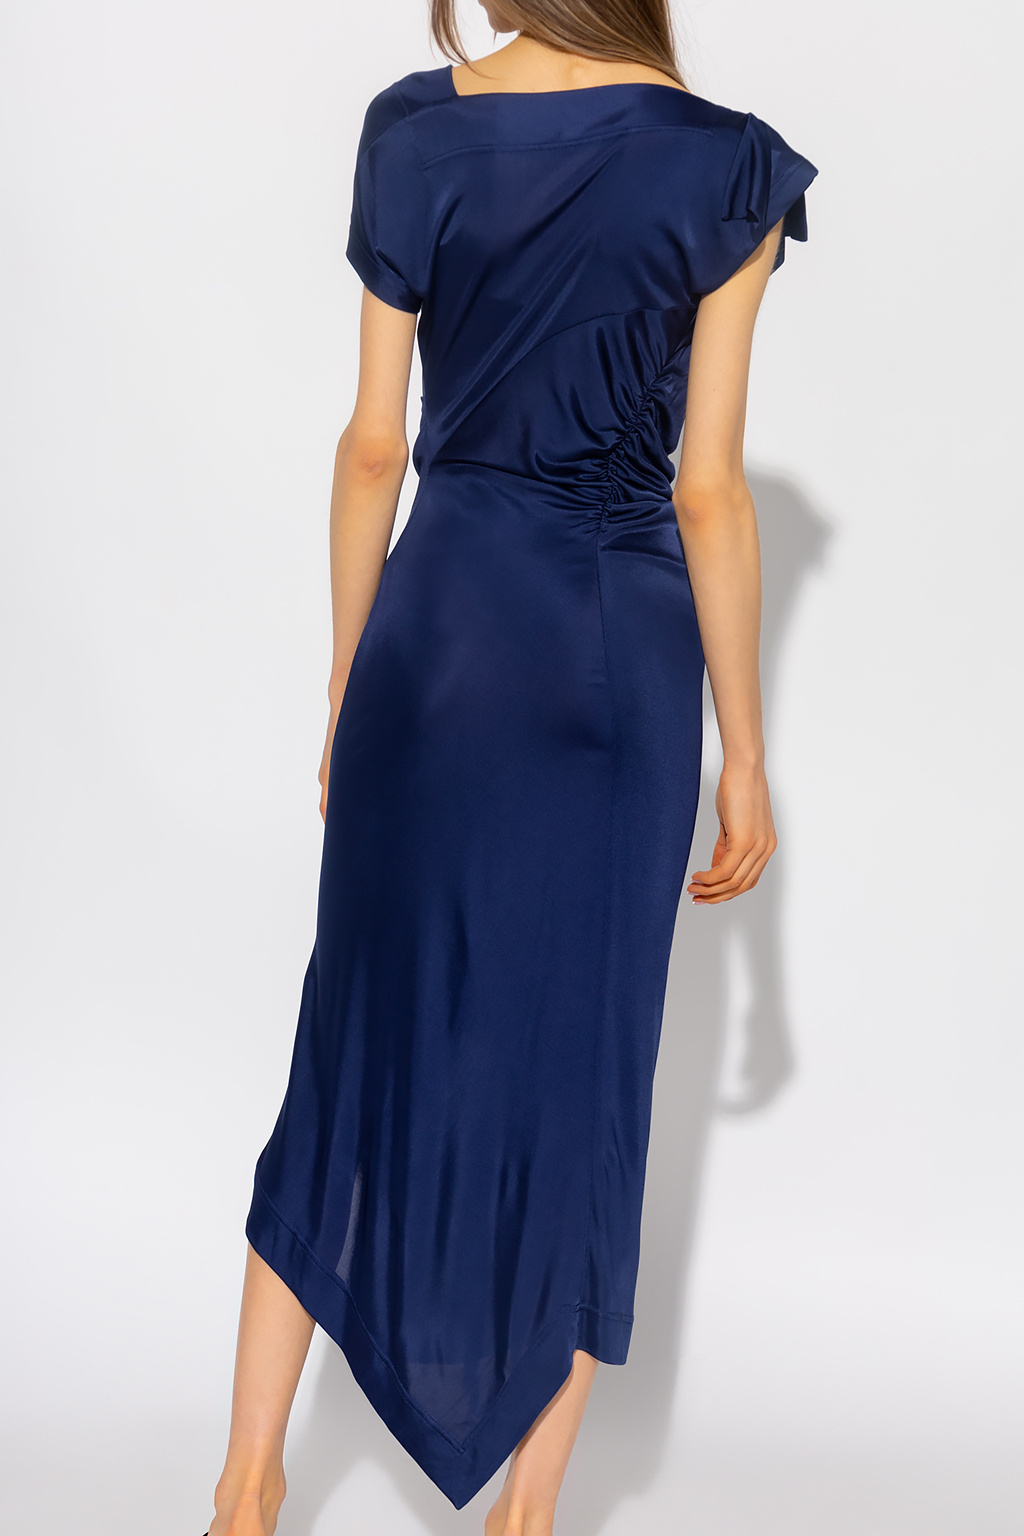 Navy blue 'Utah' asymmetrical dress Alexander Vivienne Westwood